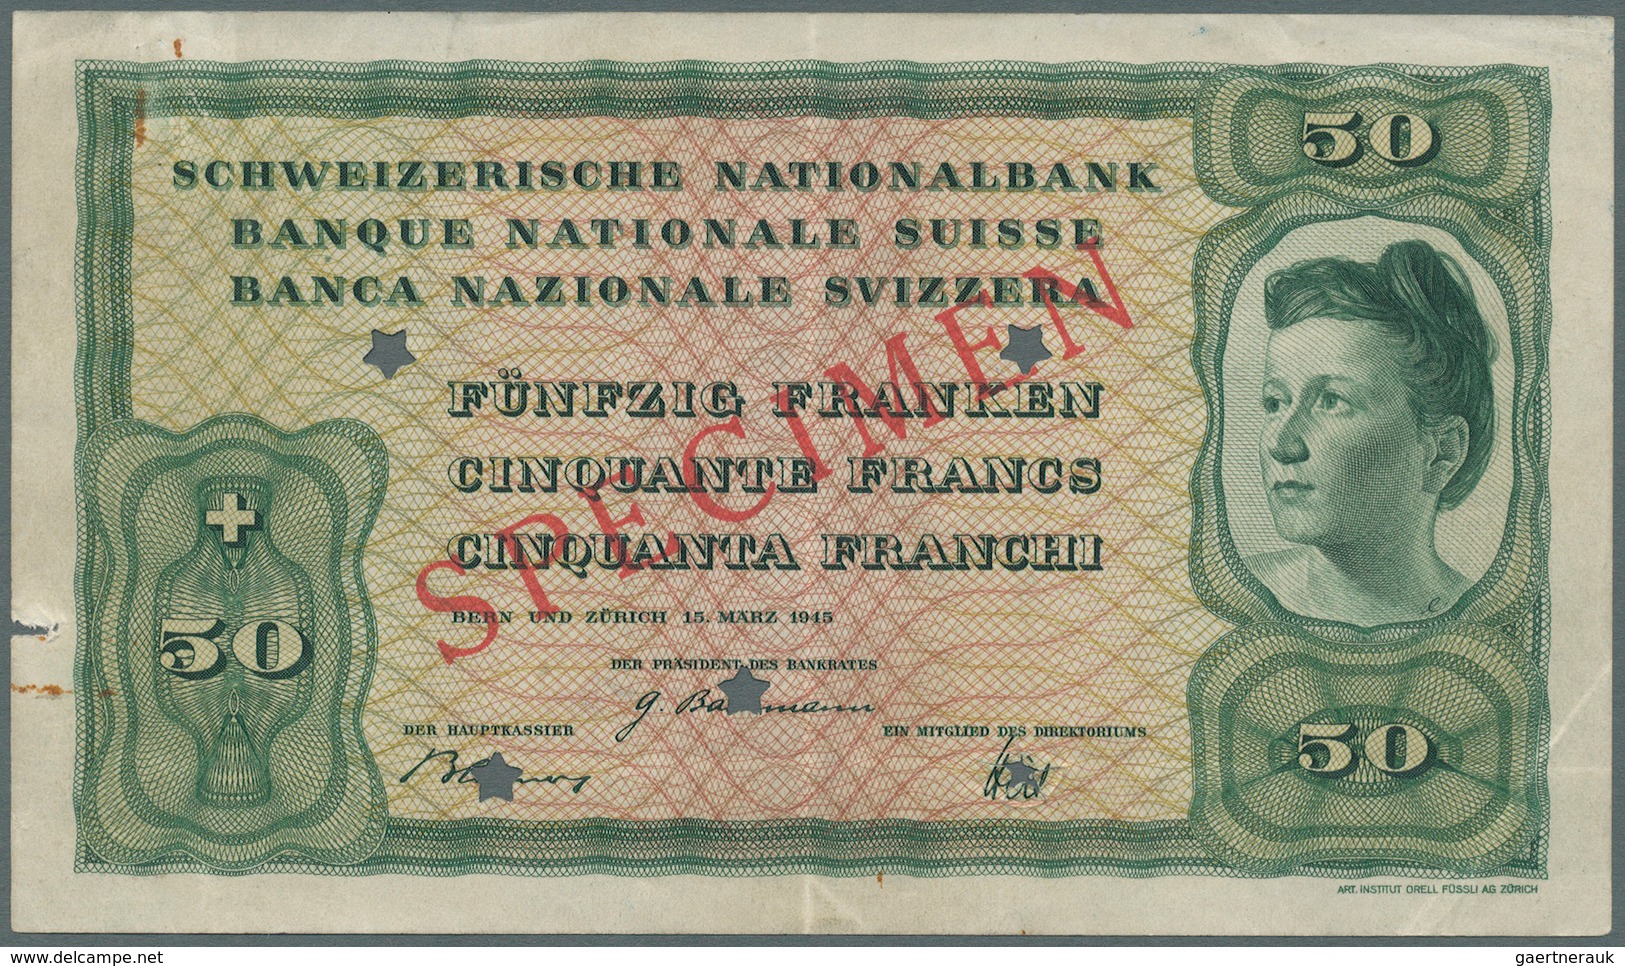 02466 Switzerland / Schweiz: 50 Franken 1945 Specimen P. 42s, Rare Unissued Banknote, 5 Star Cancellation - Switzerland